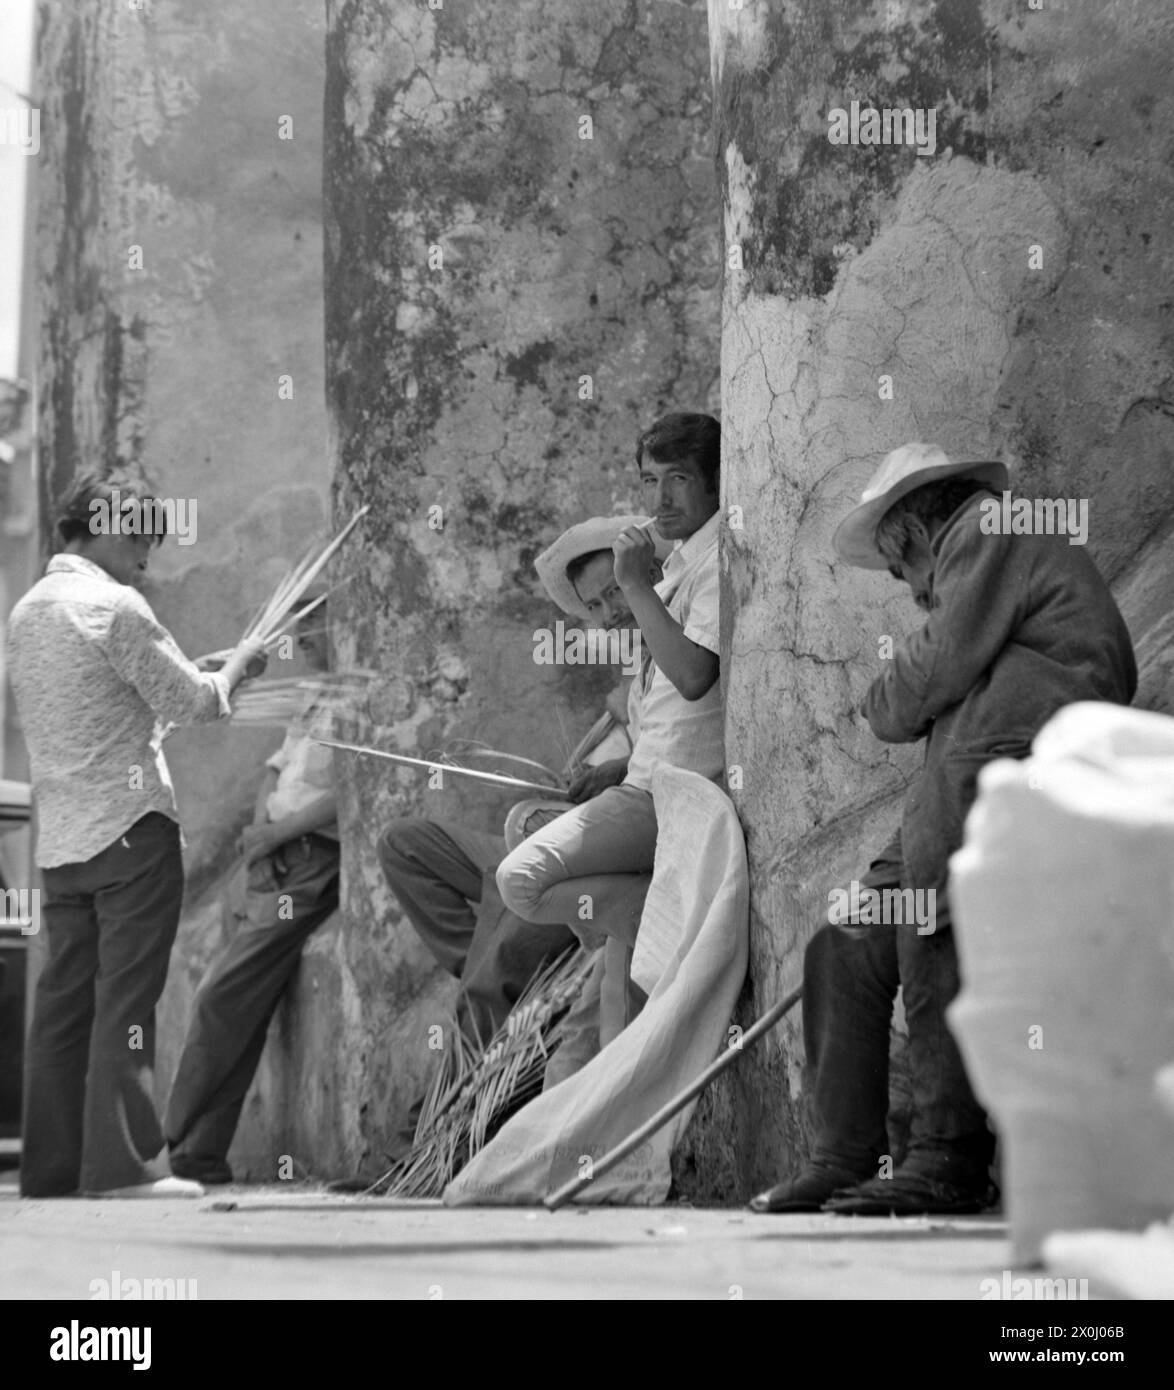 Certains hommes se tiennent ensemble sur un mur à Guernavaca au Mexique. Deux d'entre eux portent des chapeaux avec de larges pots-de-vin. D'autres sont des feuilles de palmier tressées. [traduction automatique] Banque D'Images